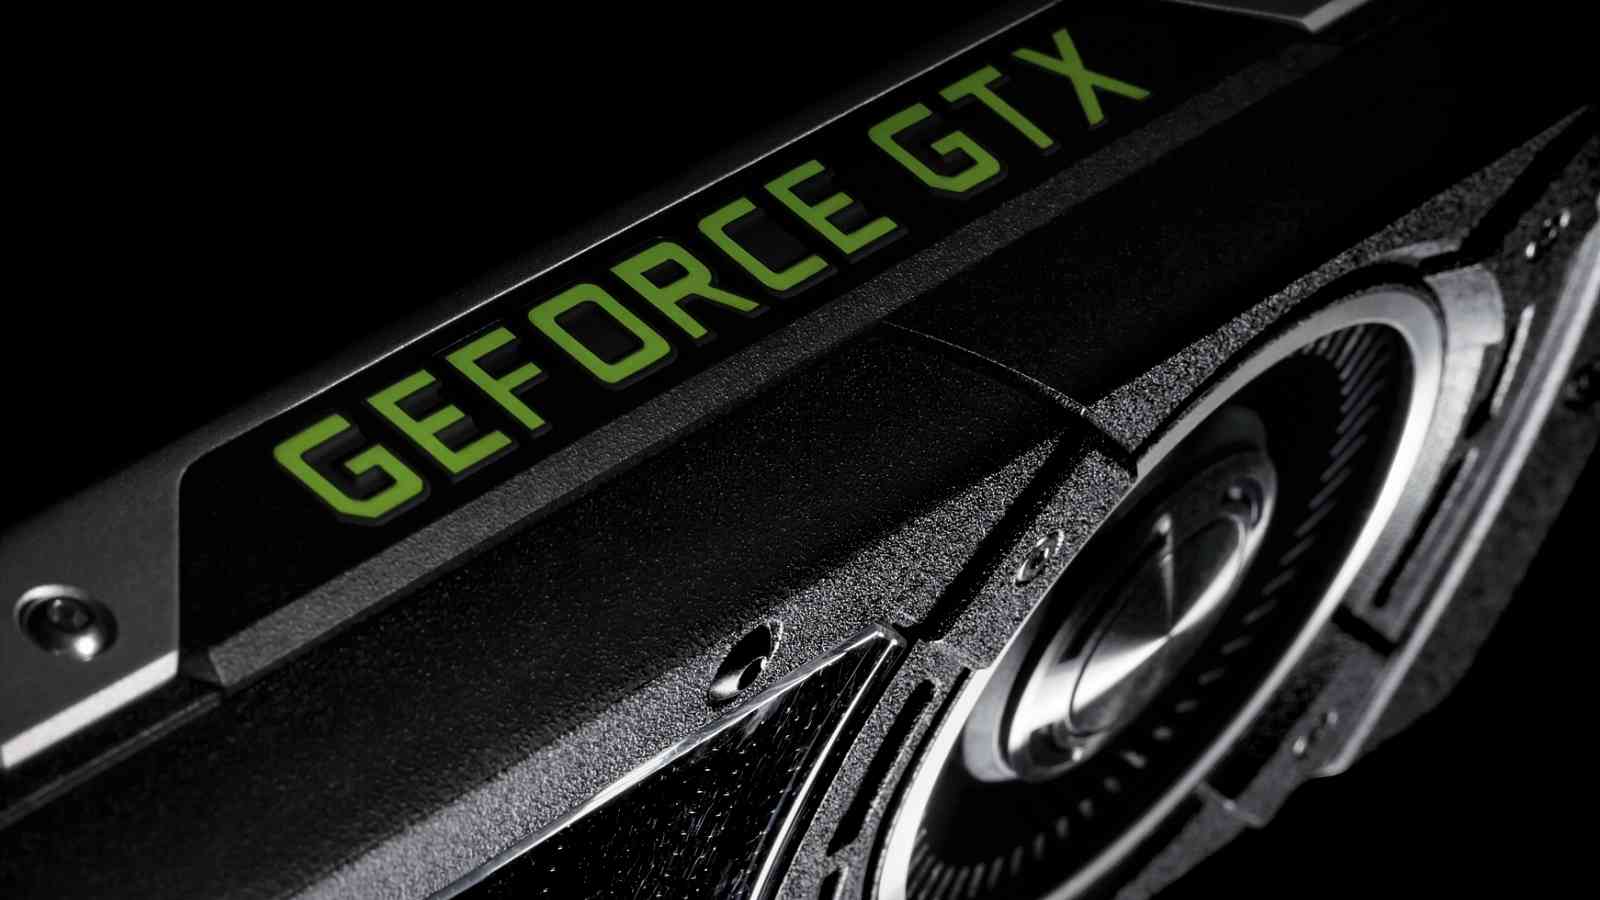 Slevy na GeForce GTX 1080 dorazily k nám, ceny začínají na 15 tisících